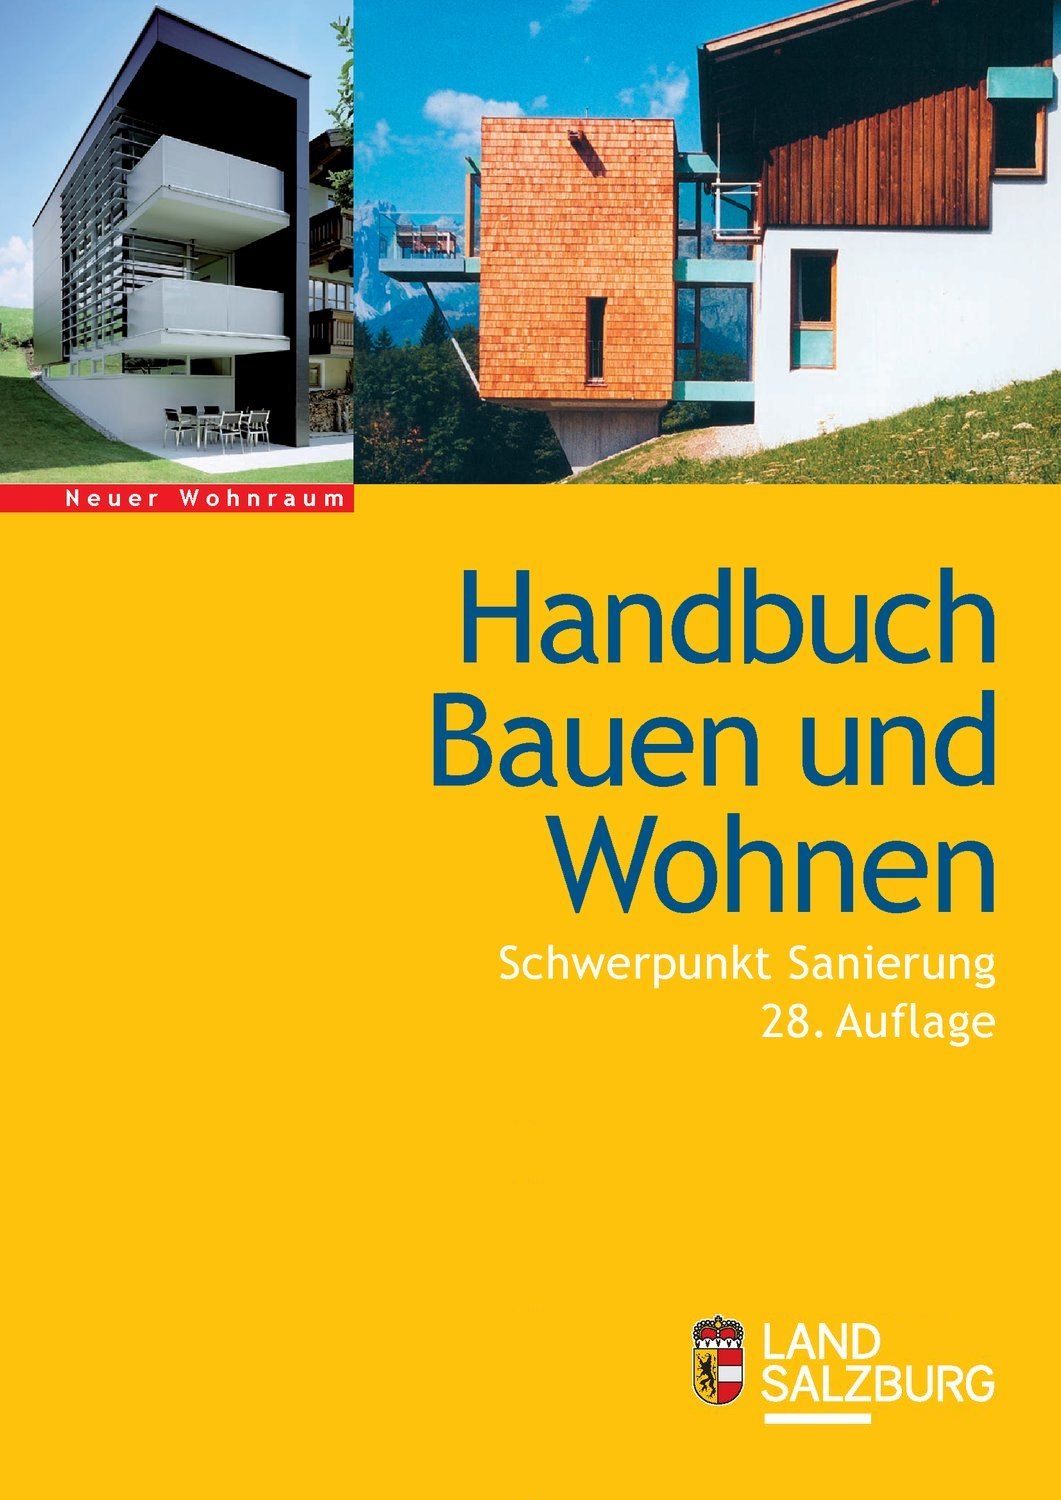 Handbuch bauen und Wohnen 2018/19